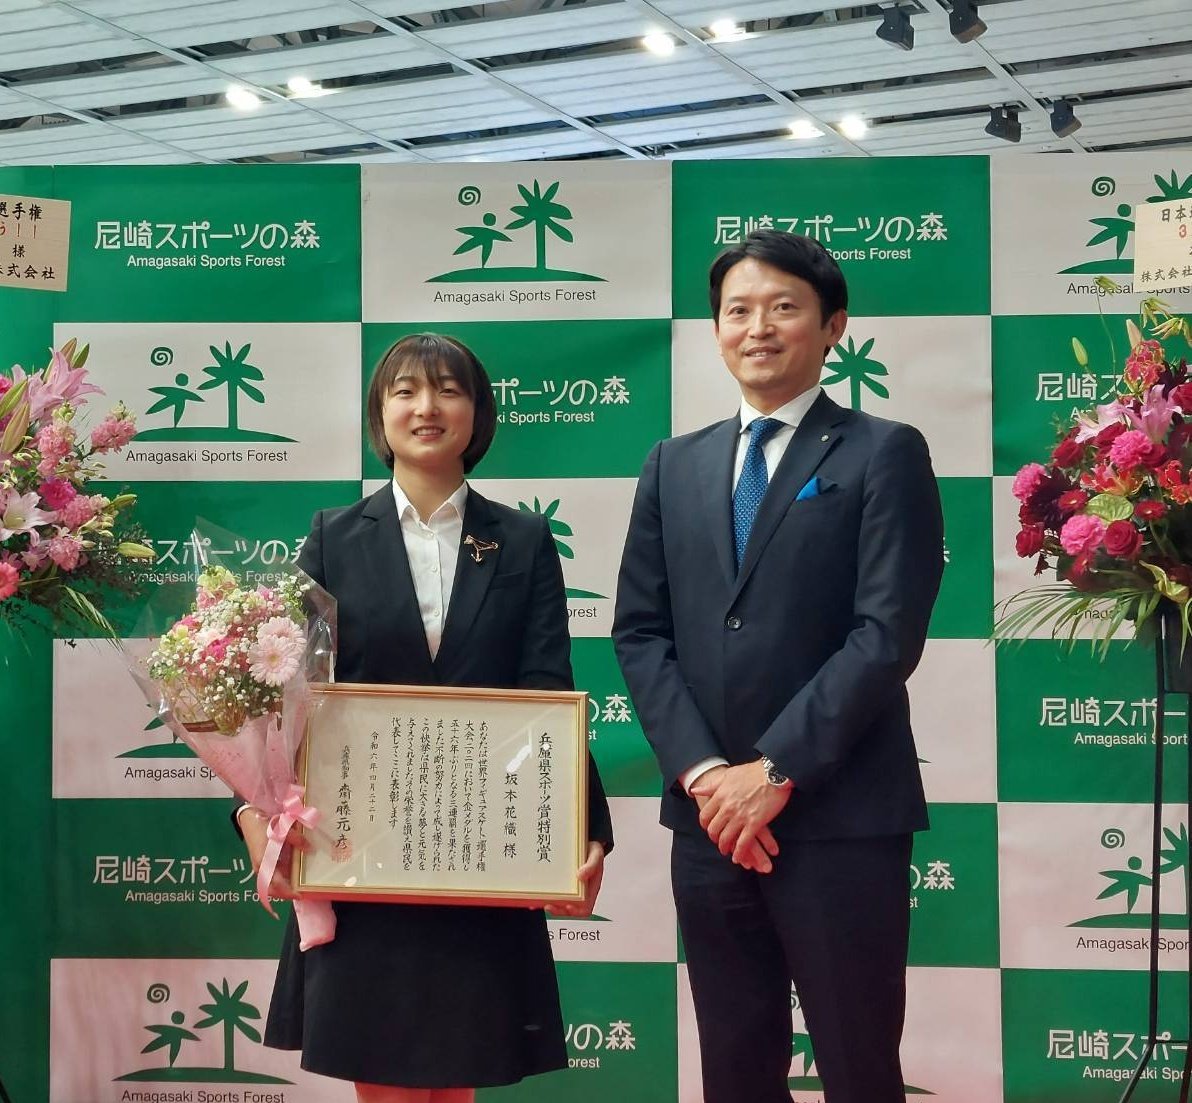 坂本花織選手に県スポーツ特別賞を贈呈しました。56年ぶりの世界選手権3連覇を見事果たされ、大きな感動を与えて頂きました。 →坂本さんのように、スポーツなどで海外に挑戦する若者を応援していきます。